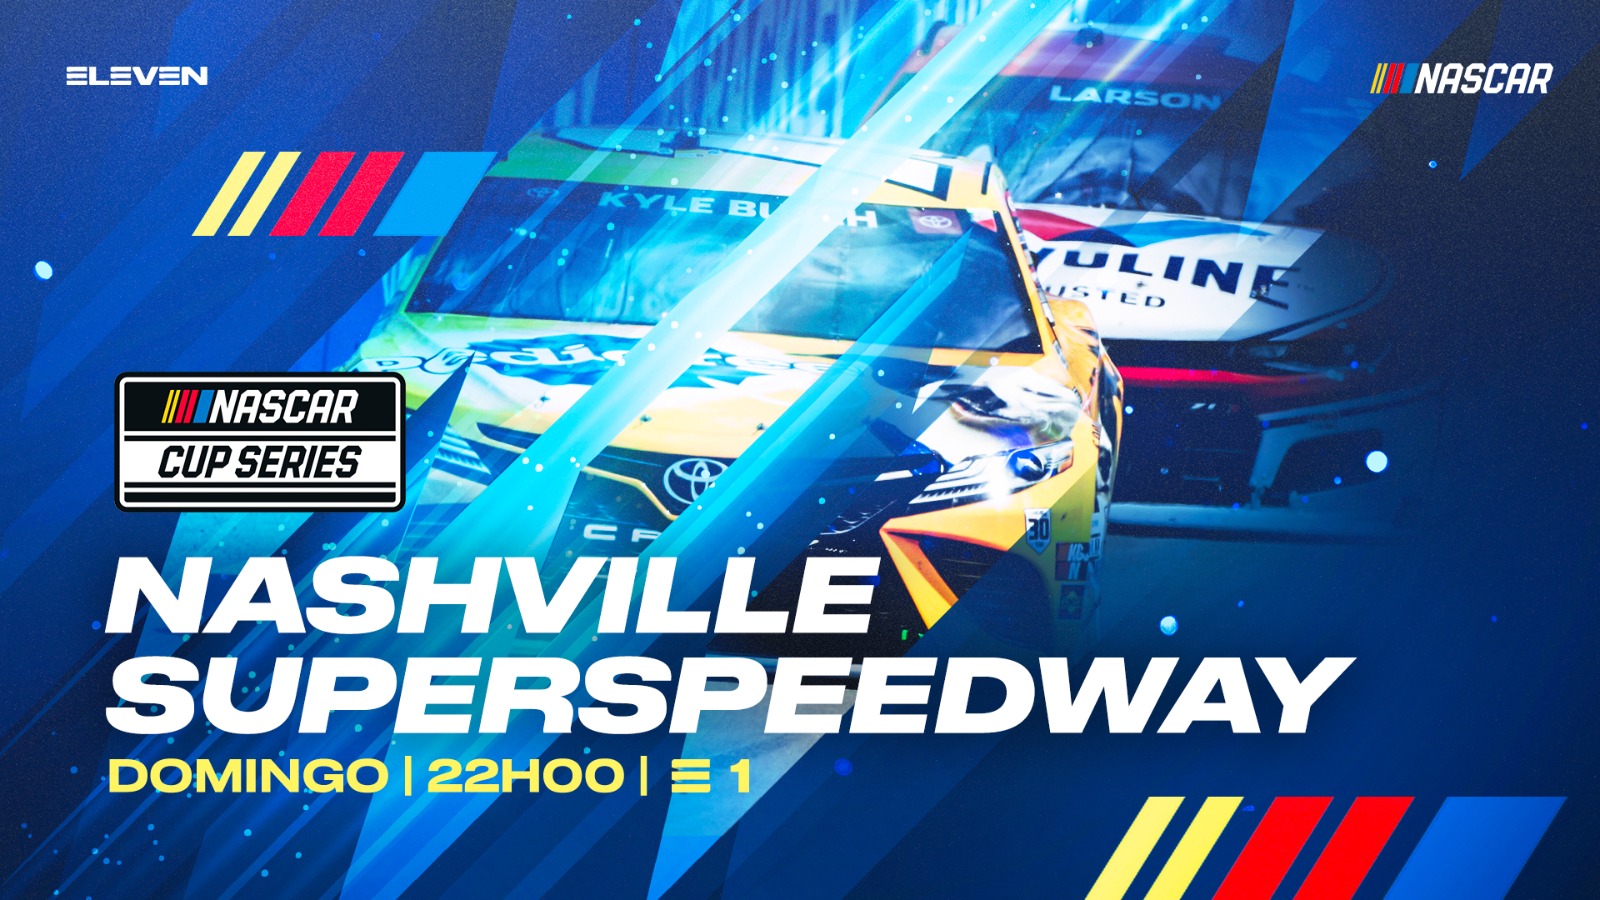 Este fim de semana a adrenalina da NASCAR na Nashville Superspeedway em direto na ELEVEN, Este fim de semana a adrenalina da NASCAR na Nashville Superspeedway em direto na ELEVEN